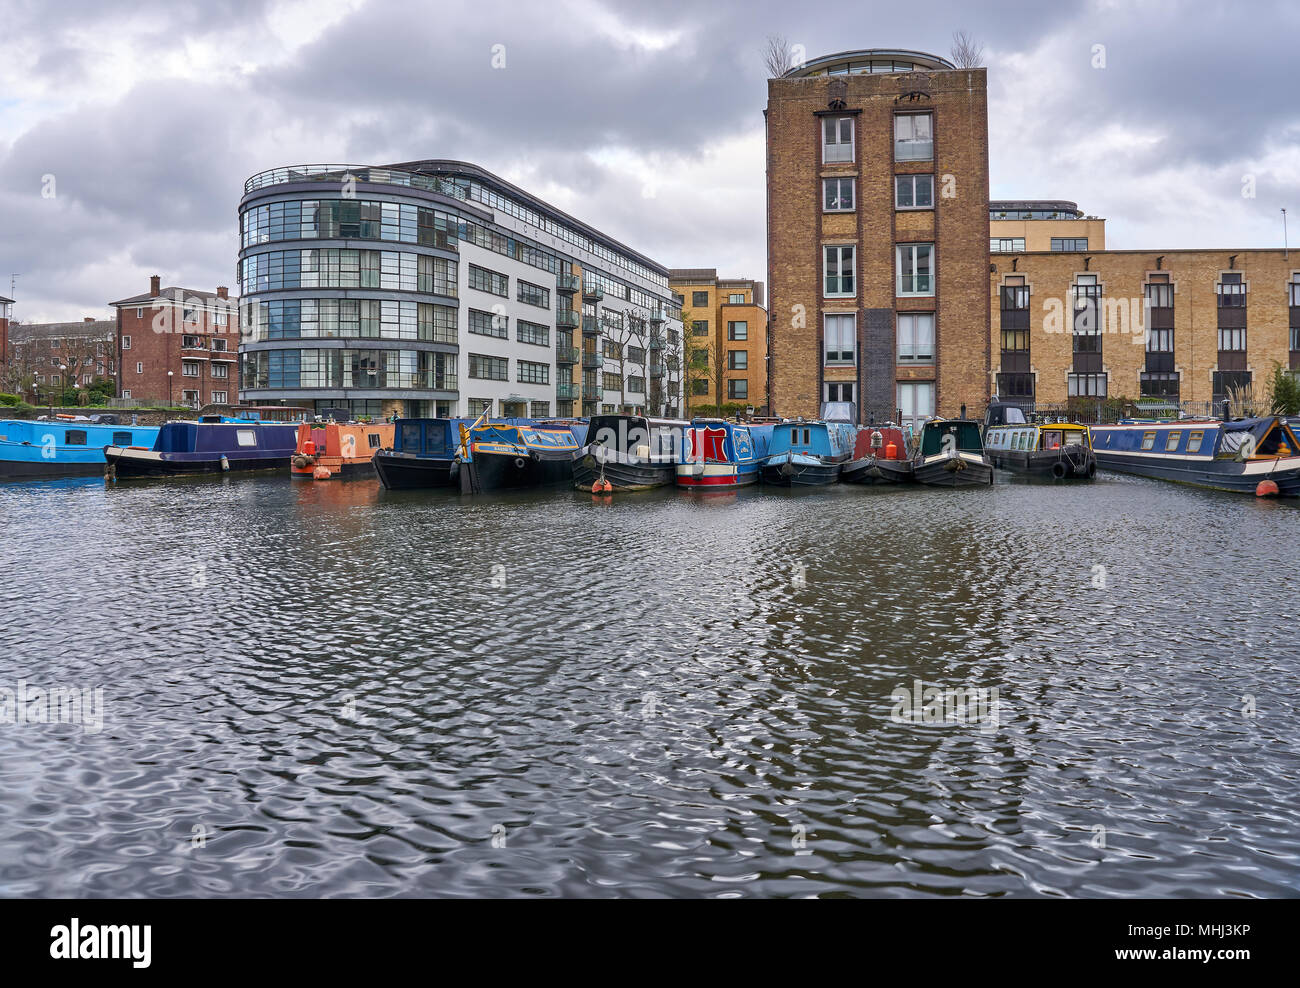 La fin de l'après-midi vue du bassin Battlebridge narrowboats colorés et sur le Regent's Canal, près de King's Cross, Londres, UK Banque D'Images